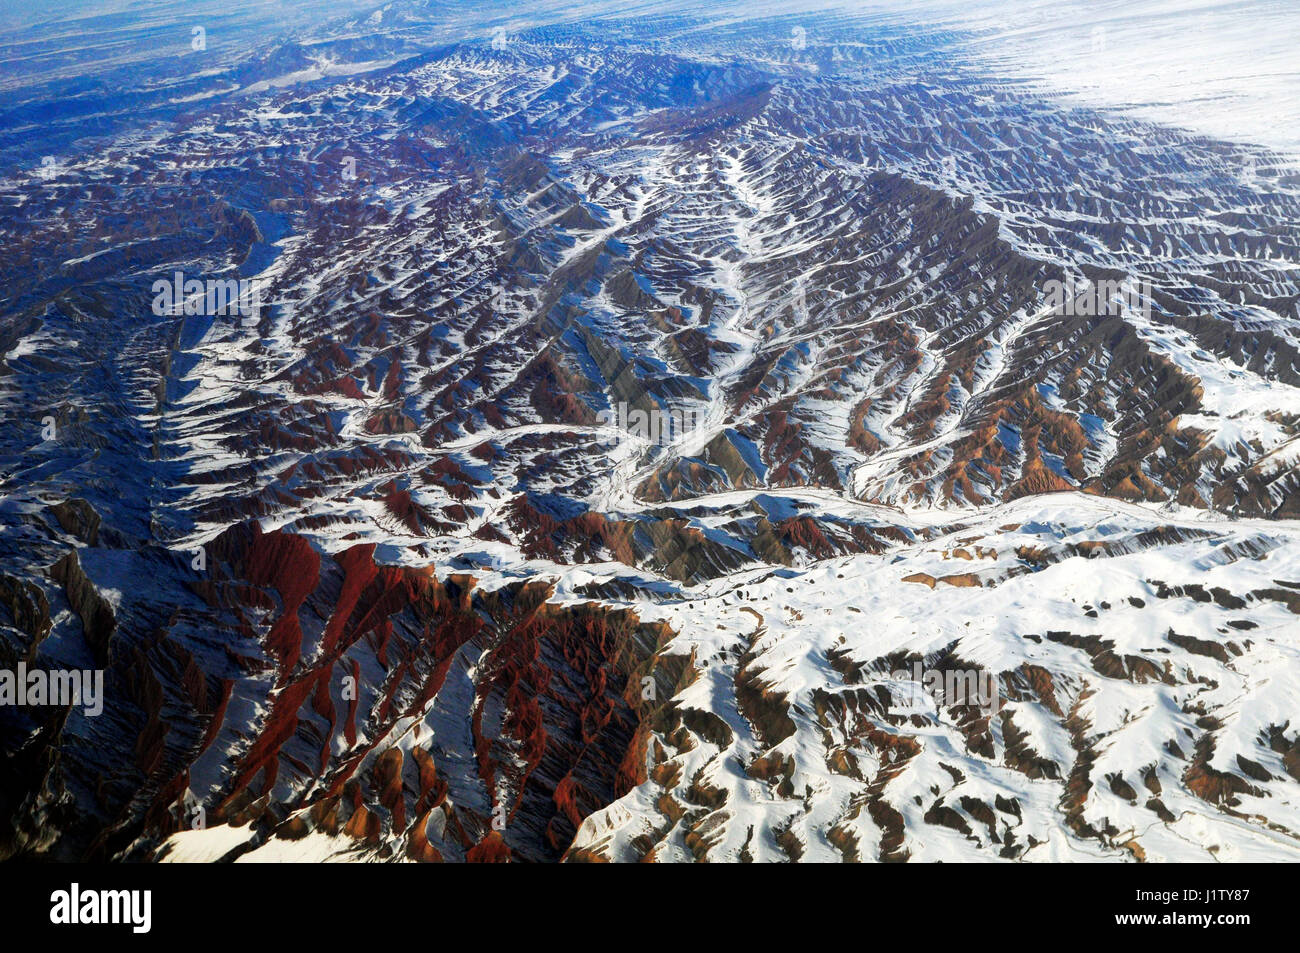 Spettacolari vedute aeree del Tian Shan mountain range in Xinjiang, Cina. Foto Stock